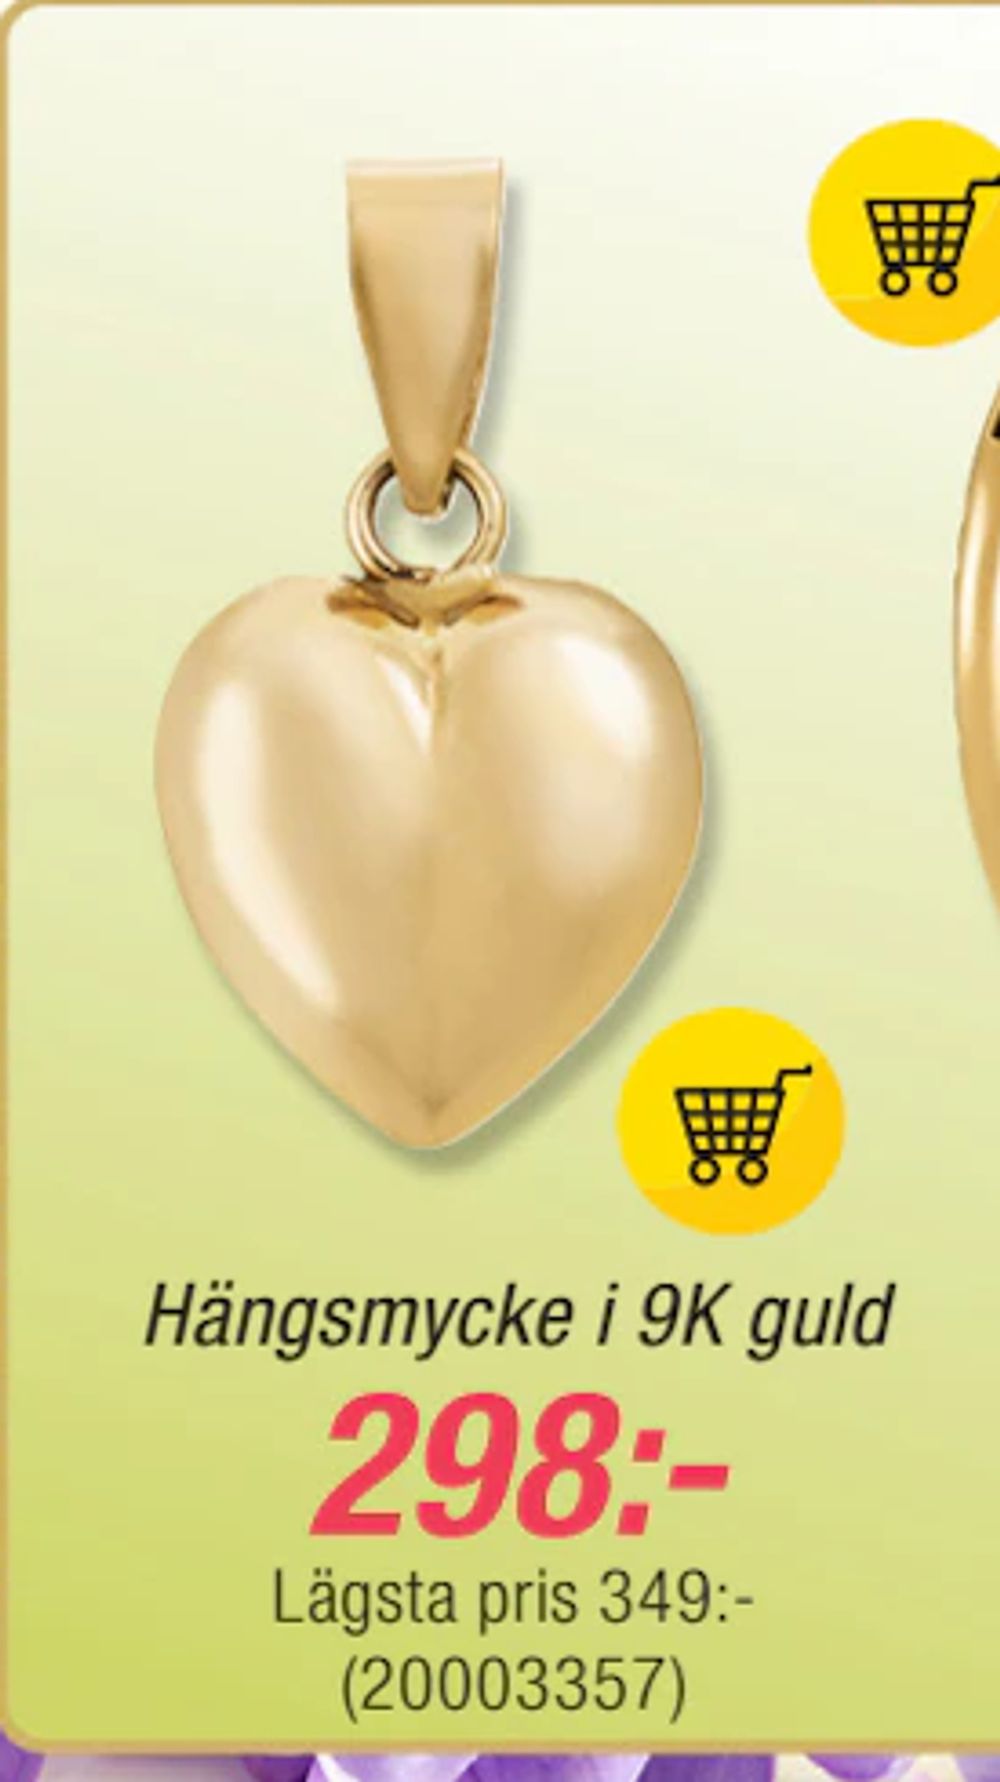 Erbjudanden på Hängsmycke i 9K guld från Guldfynd för 298 kr